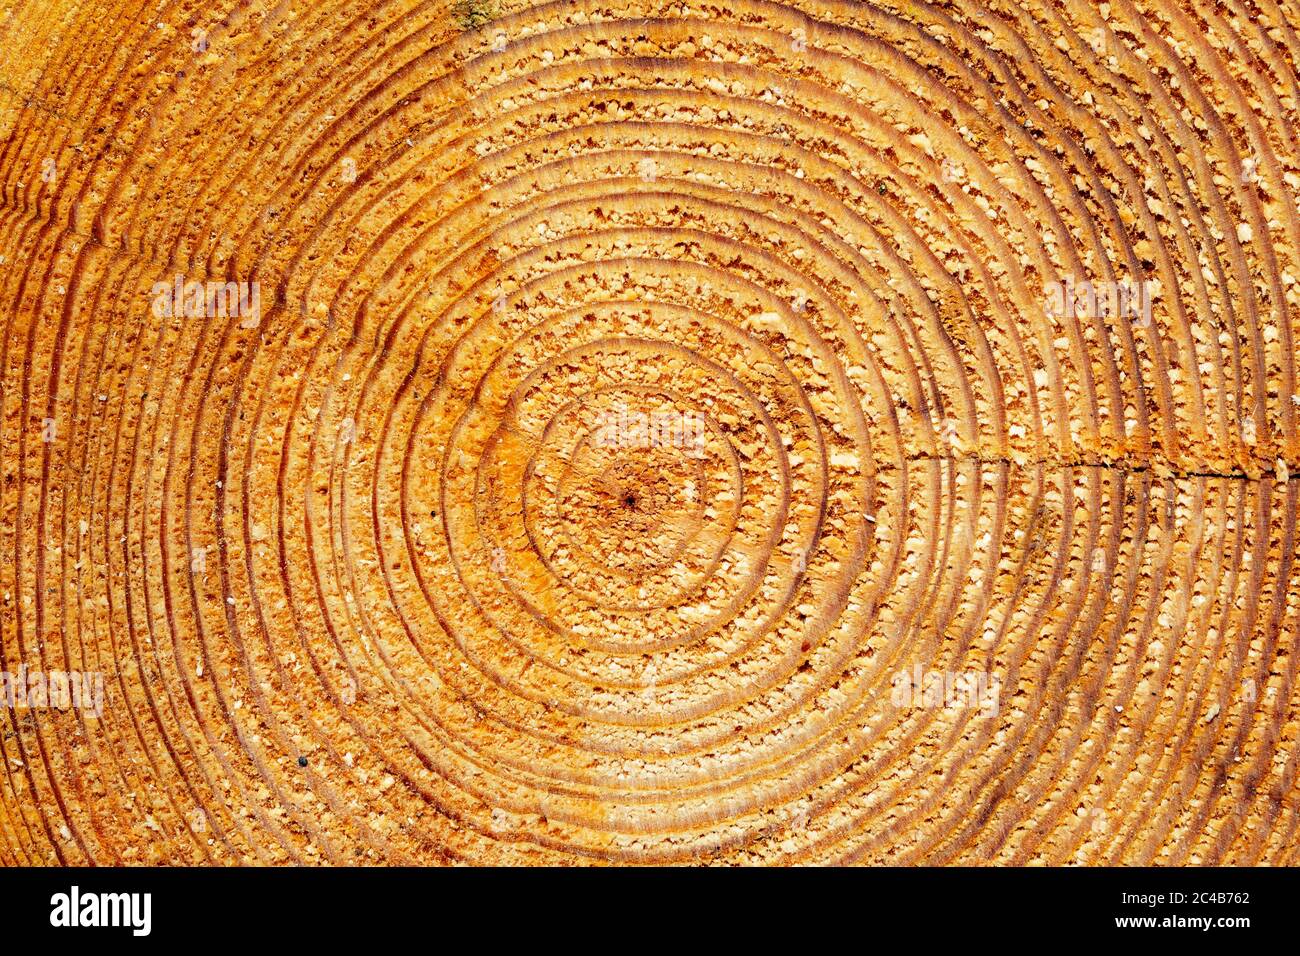 Holzstruktur mit Jahresringen, Schnittfläche, Österreich Stockfoto